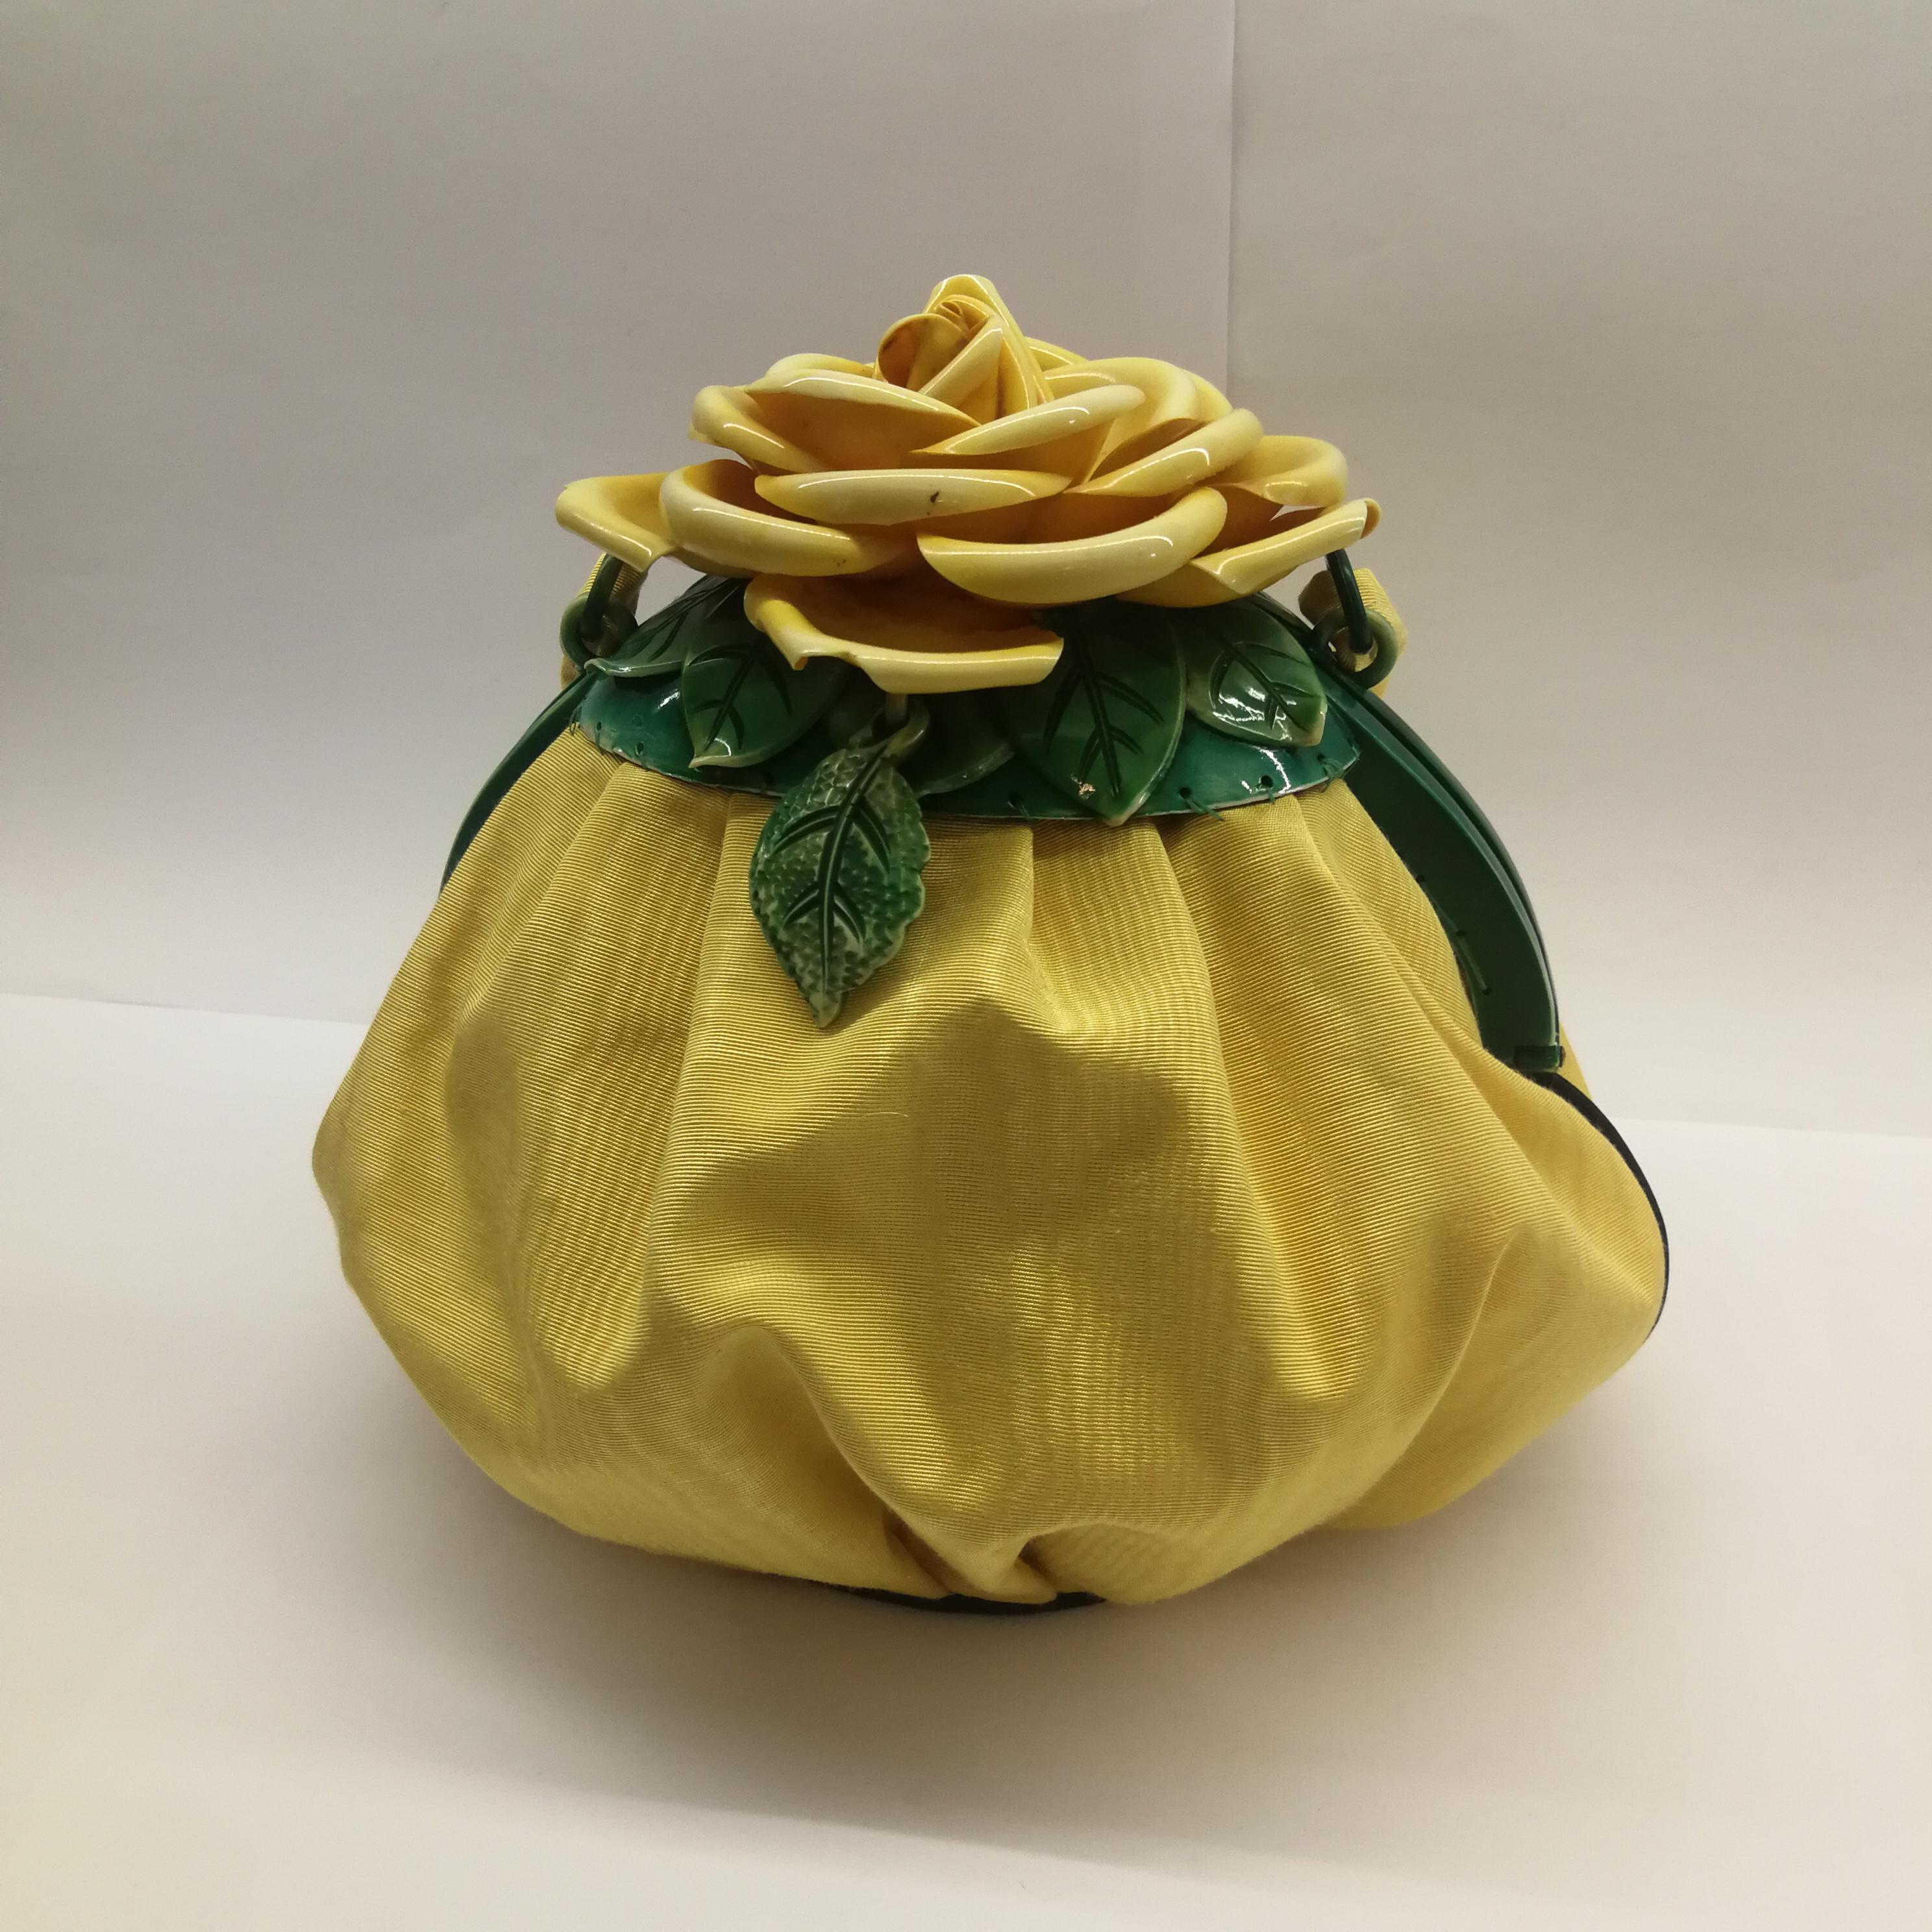 Eine sehr seltene und herausragende gelbe Seidenmoiré-Handtasche, die mit einer schönen und intakten handgemalten Zelluloid-Rose mit grünen Blättern verziert ist. Handtaschen mit diesen hochdekorativen und auffälligen Rosenmotiven sind selten, aber